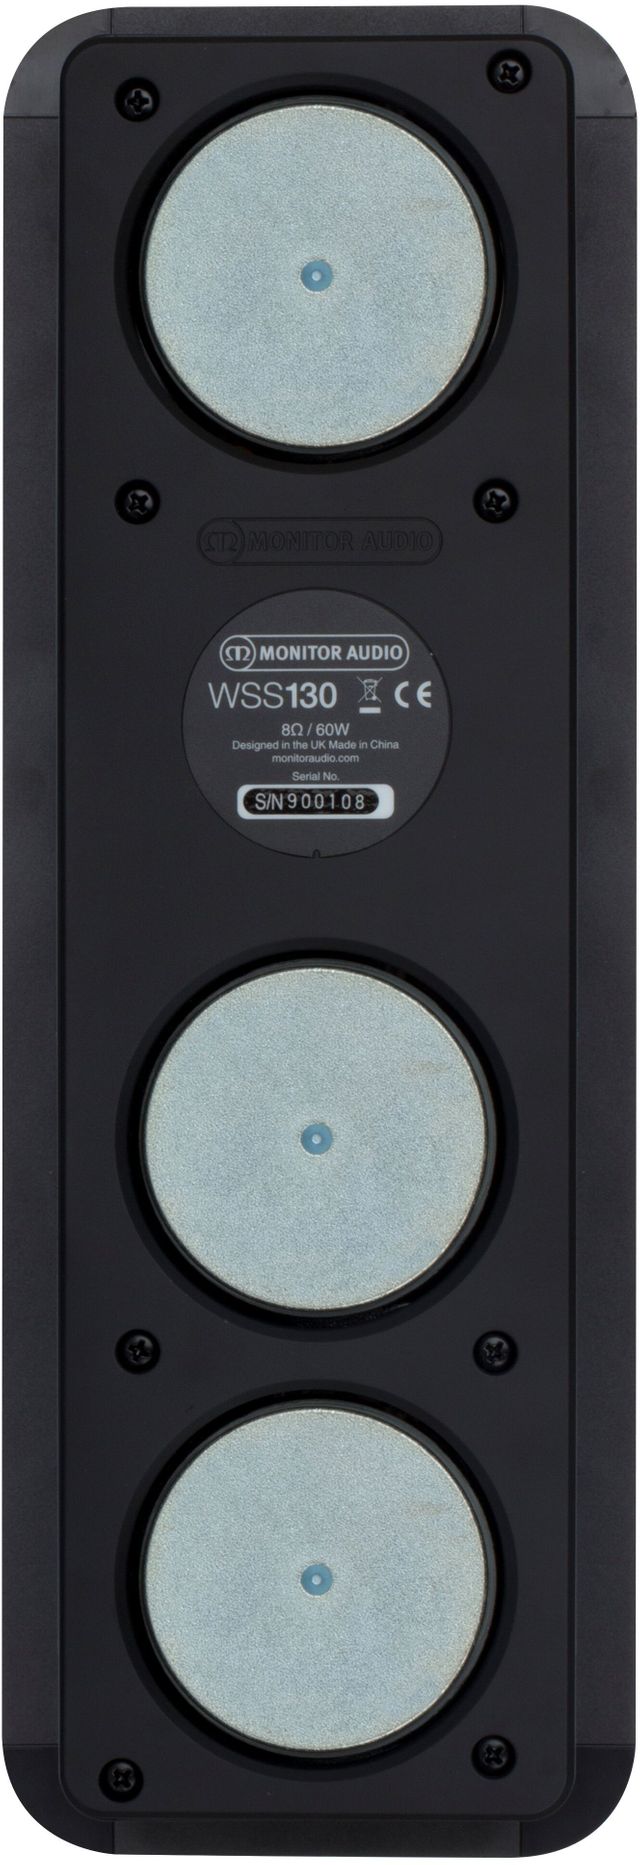 Monitor Audio WSS130 In-Wall Speaker 4